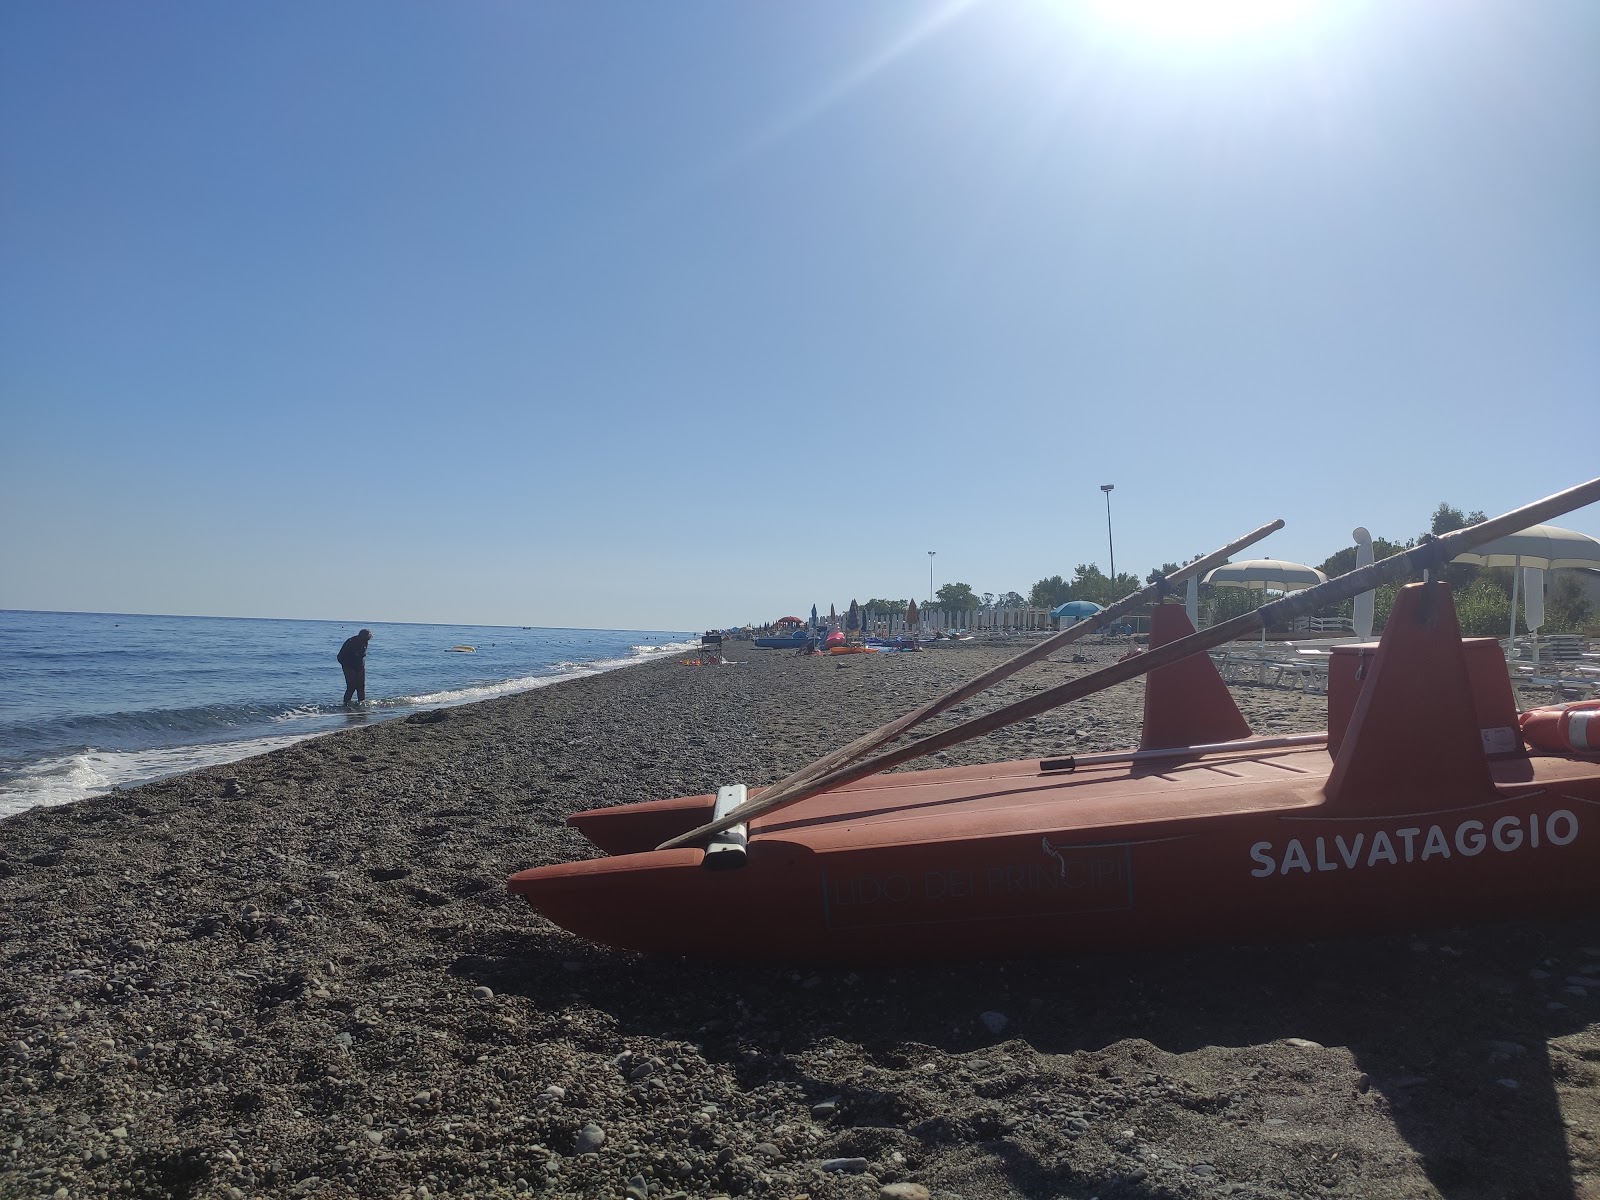 Gammicella beach'in fotoğrafı - rahatlamayı sevenler arasında popüler bir yer